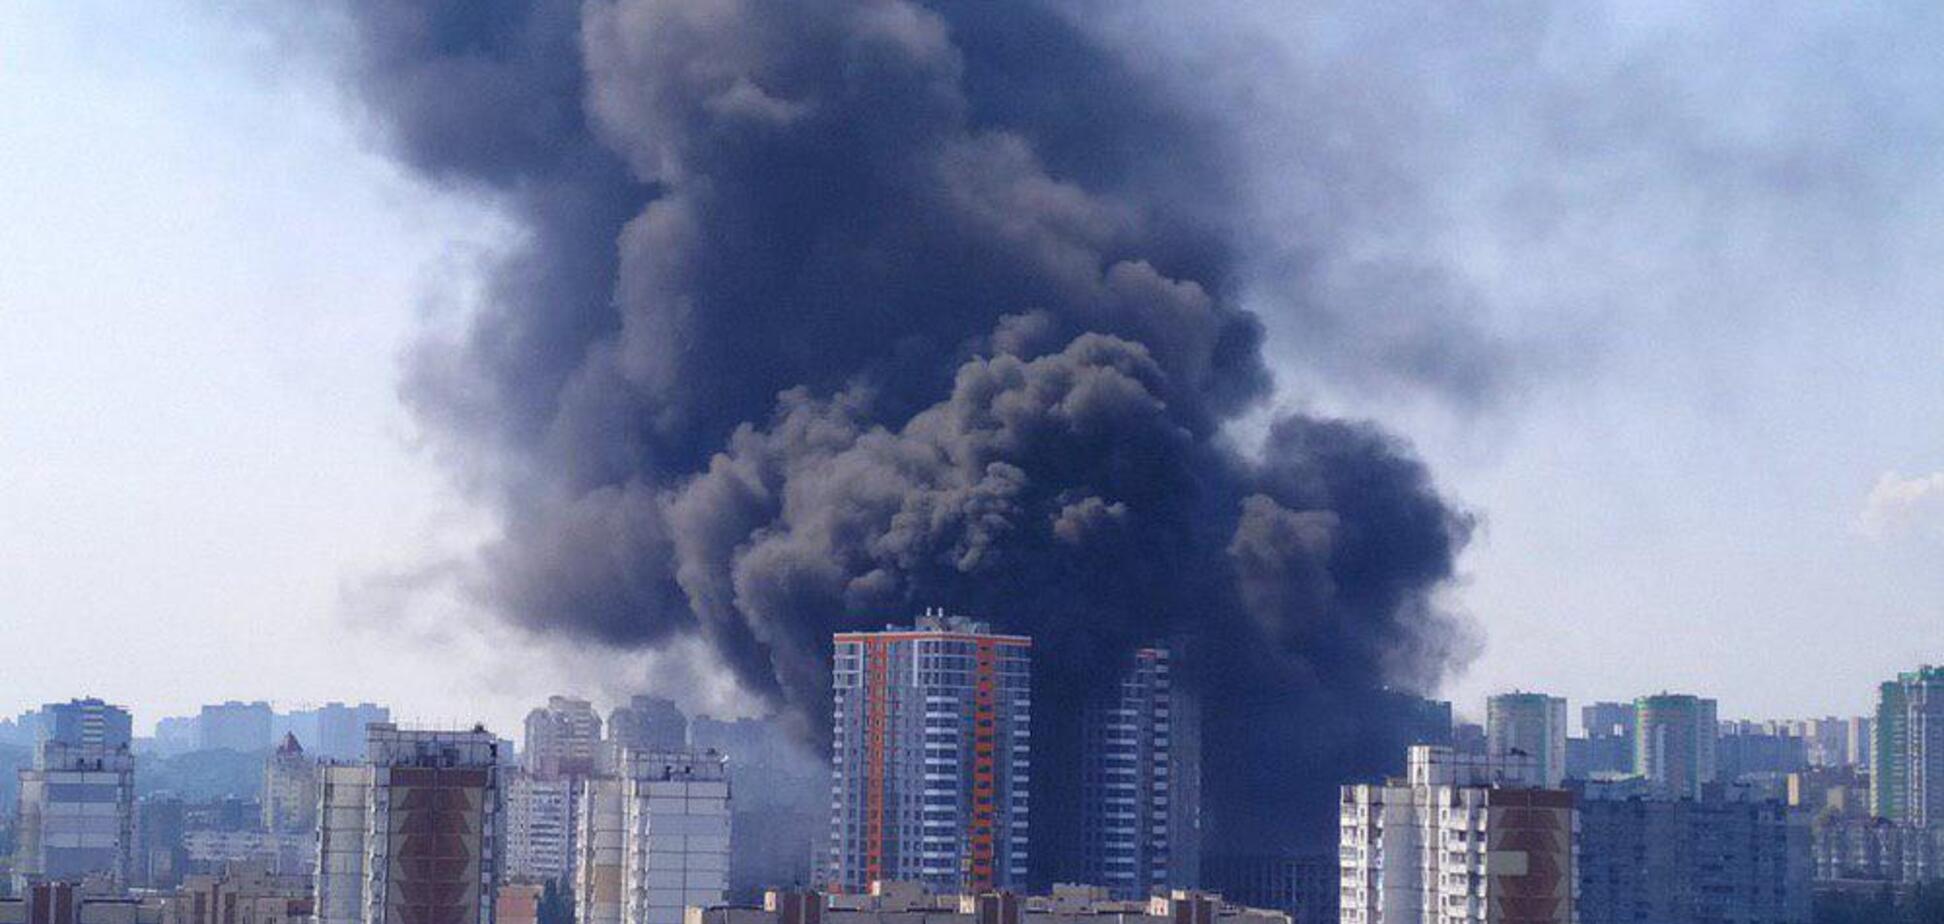 Примчали лікарі і рятувальники: у Києві в новобудові спалахнула масштабна пожежа